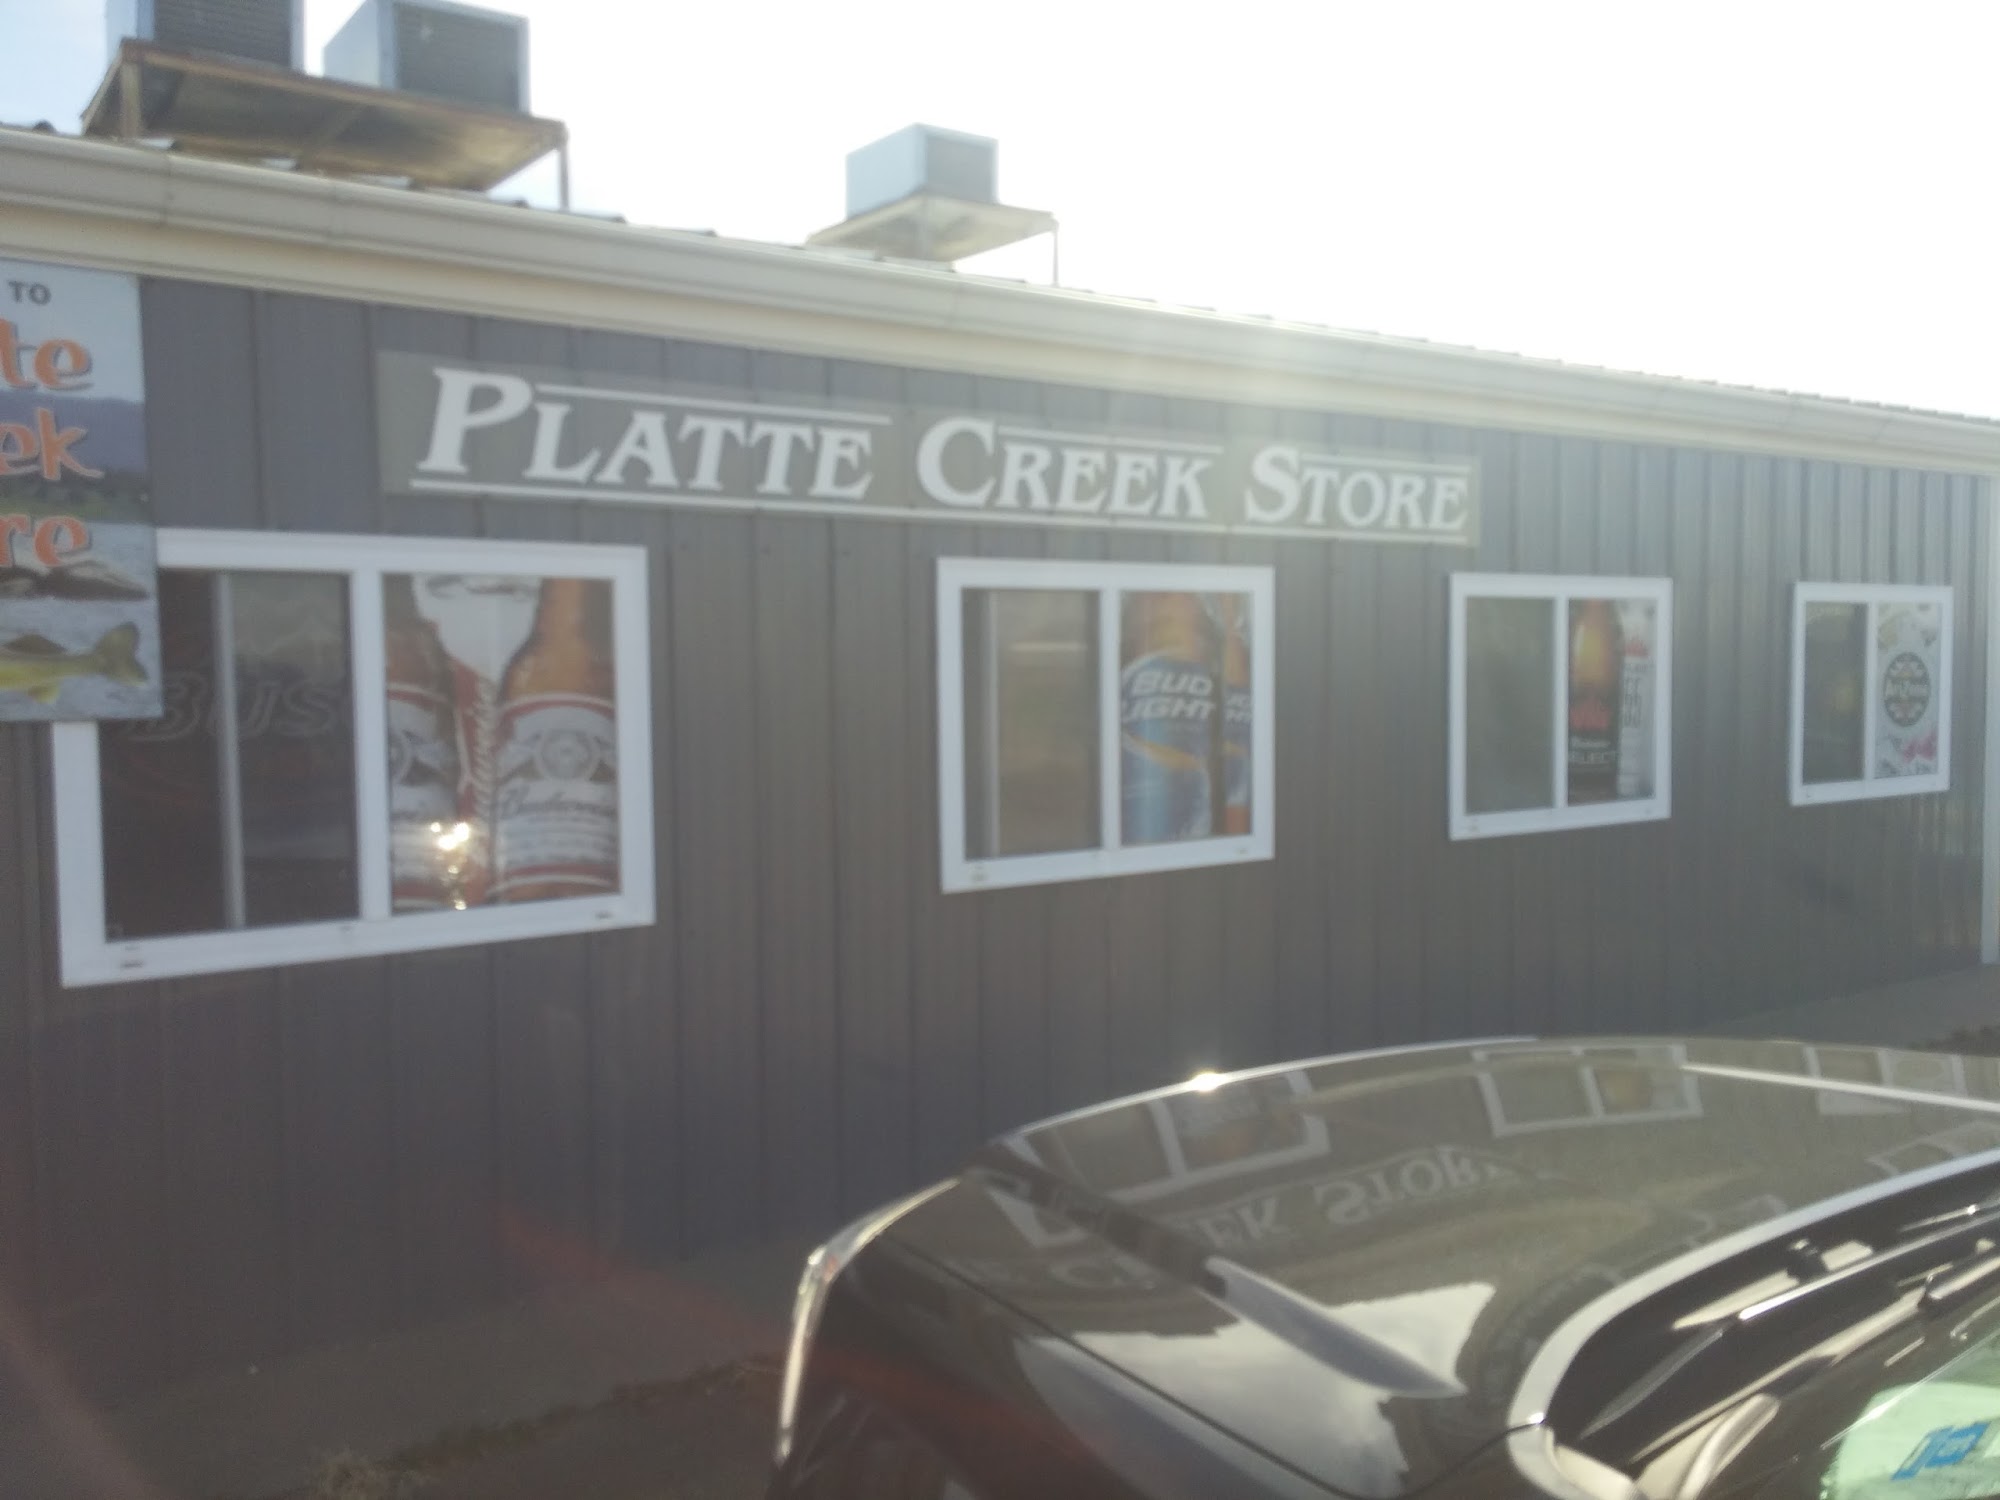 Platte Creek Store & Campground